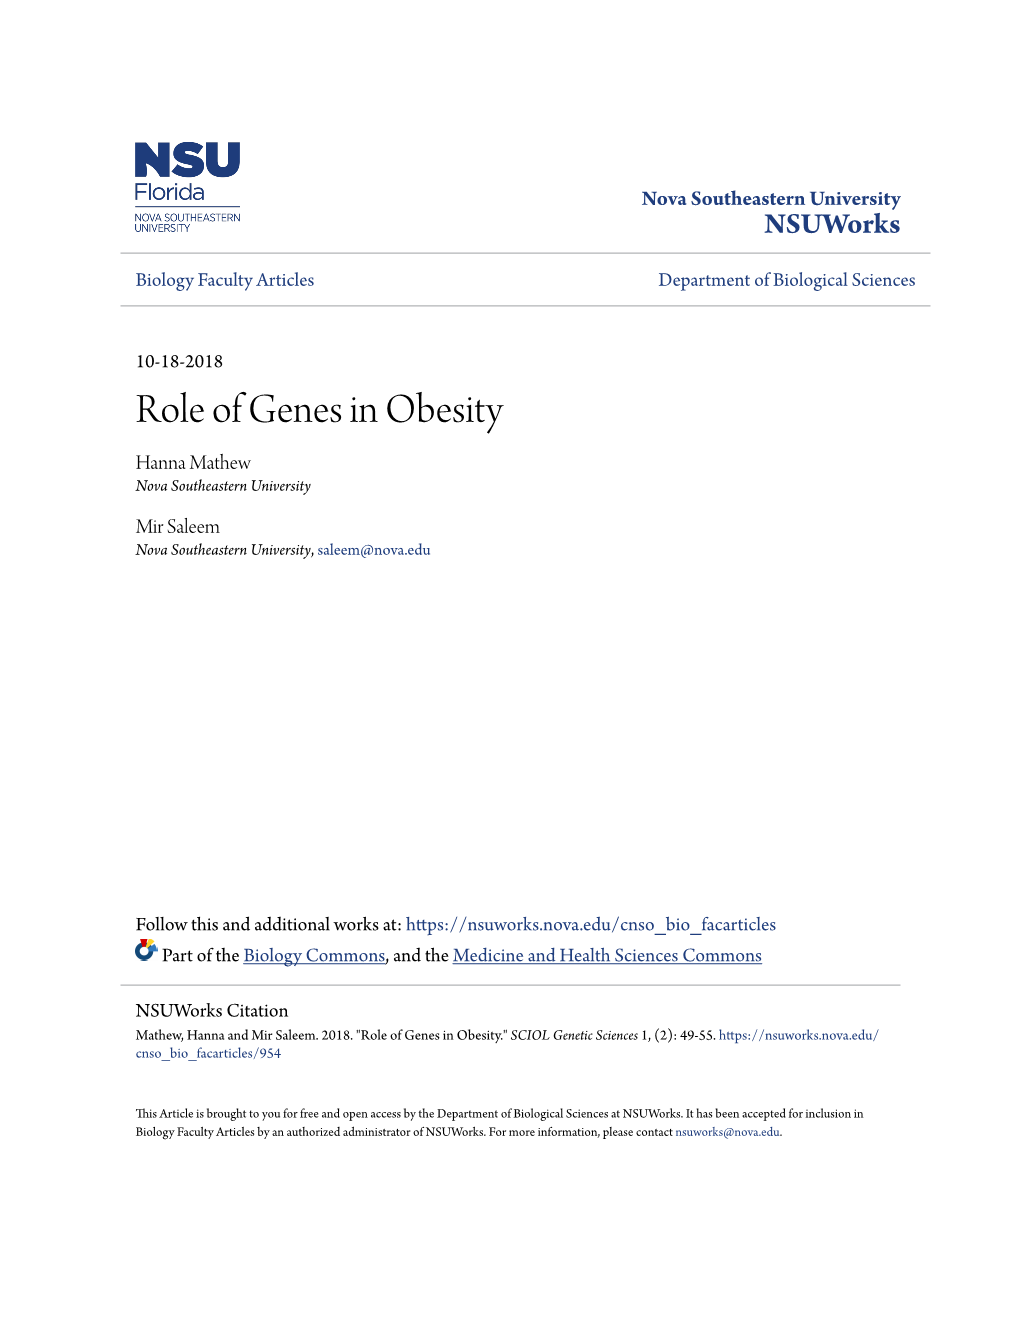 Role of Genes in Obesity Hanna Mathew Nova Southeastern University